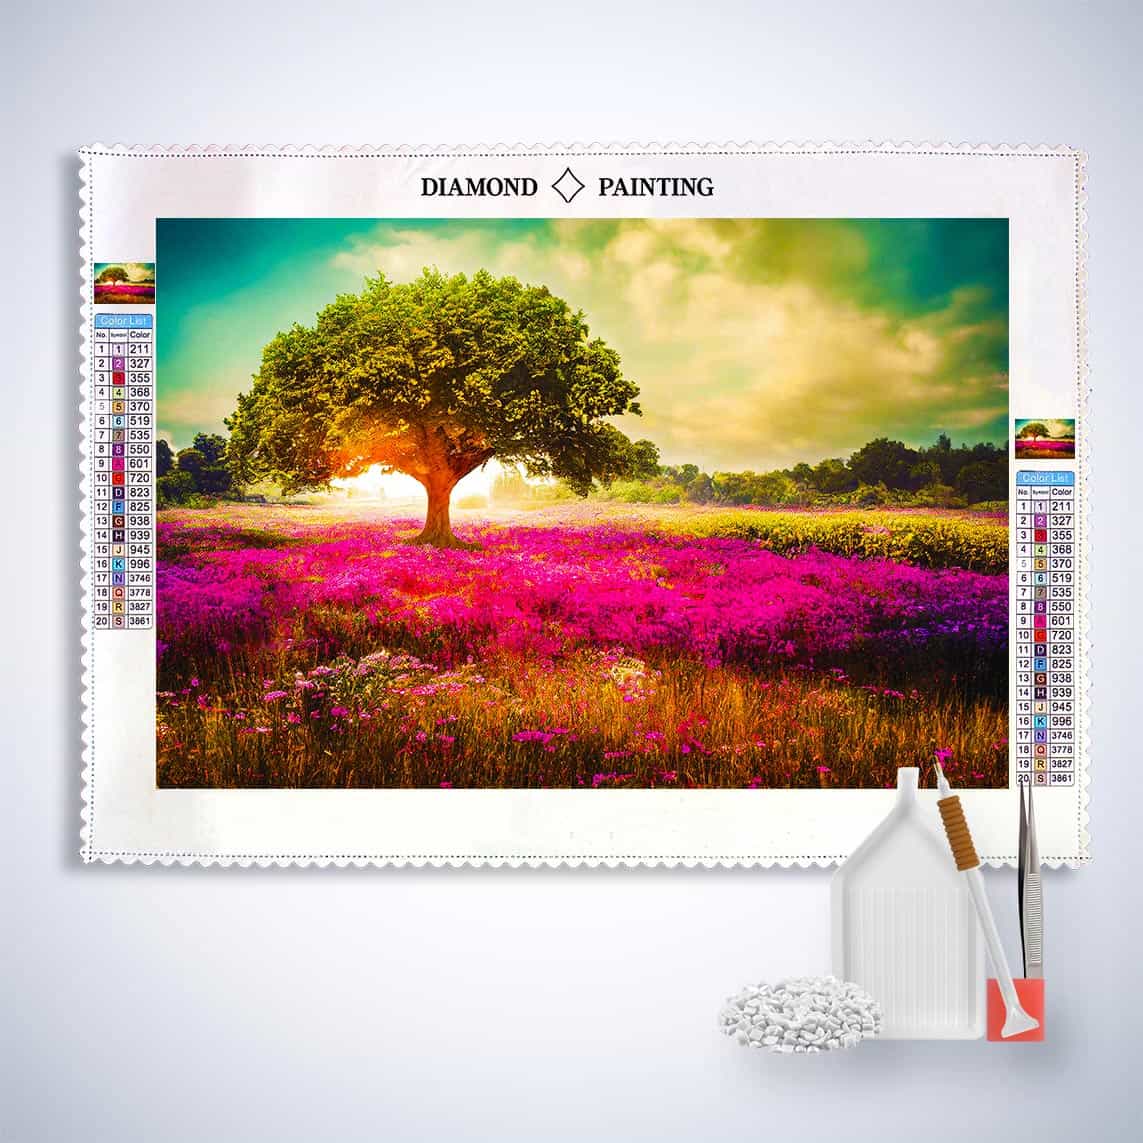 Diamond Painting - Beleuchteter Sonnenbaum - gedruckt in Ultra-HD - Baum, Horizontal, Landschaft, Sonnenuntergang